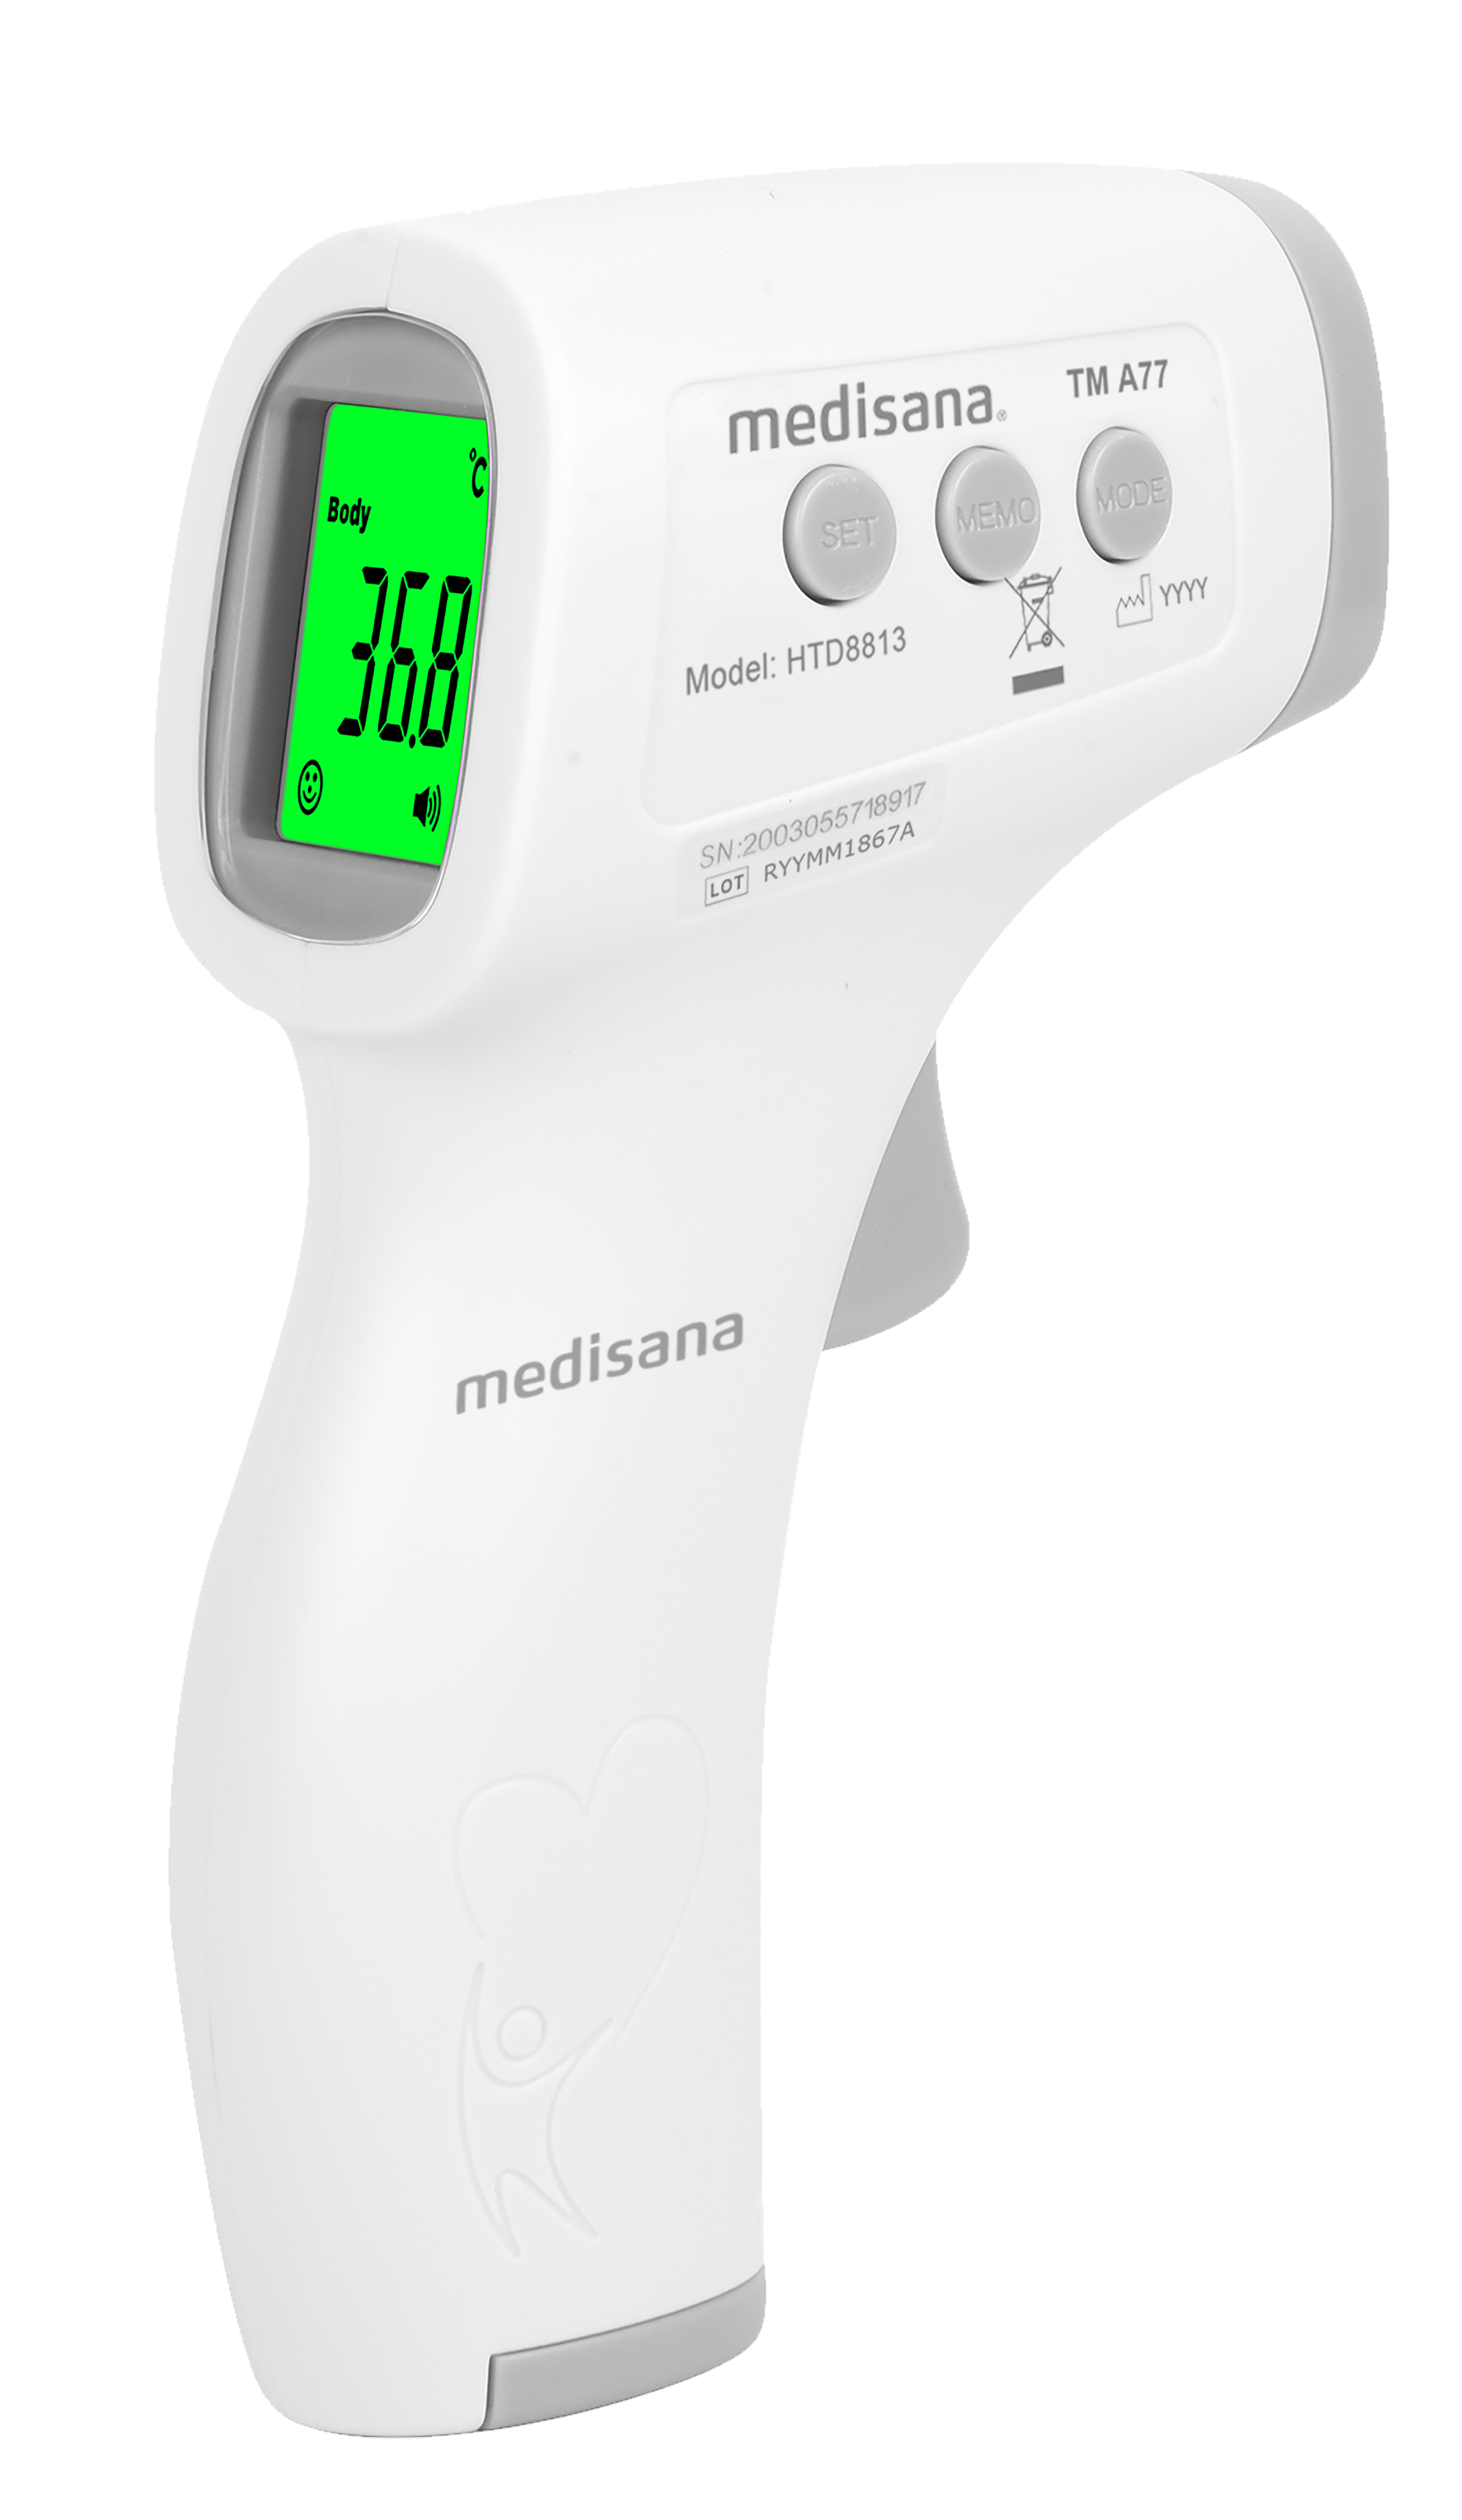 Ploeg van abortus TM A77 Infrarood lichaamsthermometer medisana®